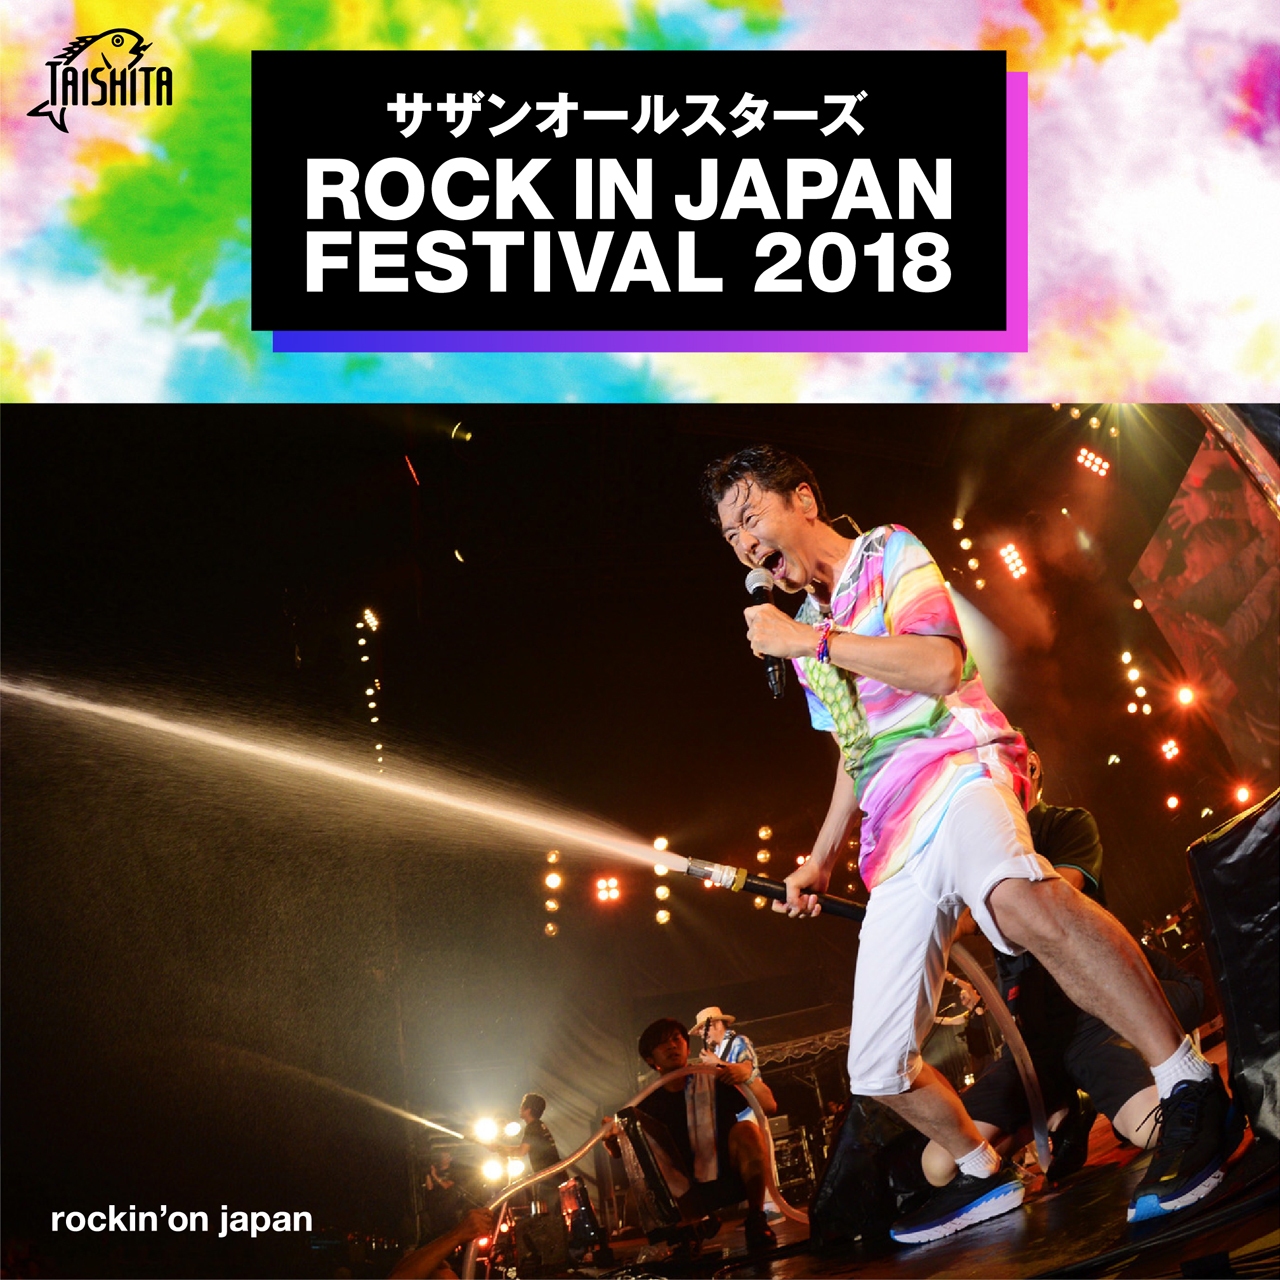 サザンオールスターズ Official 2年前の今日は サザンオールスターズが Rock In Japan Festival 18 に出演した日 約7万人のオーディエンスと大いに盛り上がった アツいライブを改めてお楽しみください 希望の轍 Youtube T Co